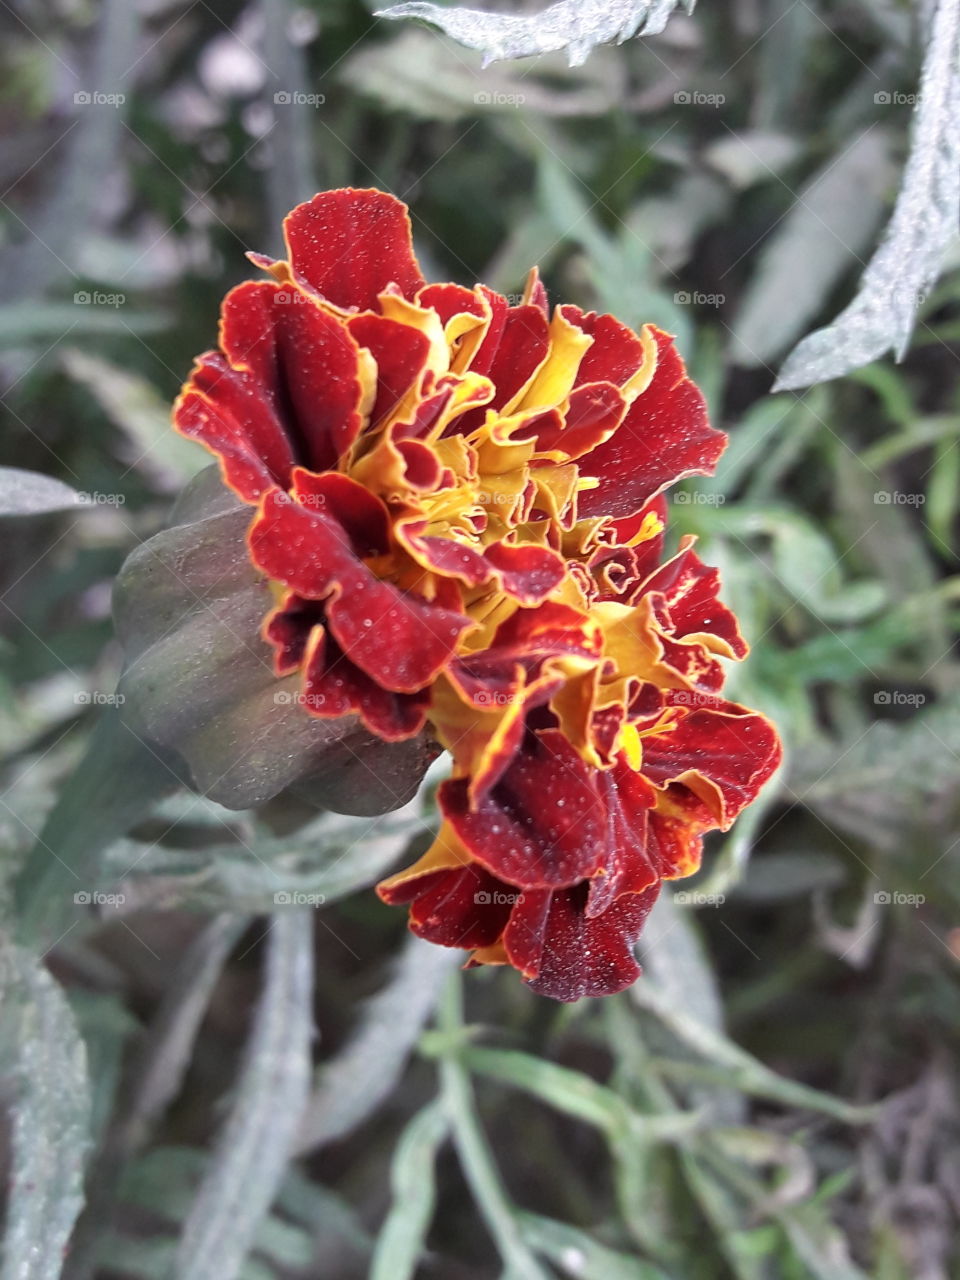 Red marigold
flowers
maroon flower